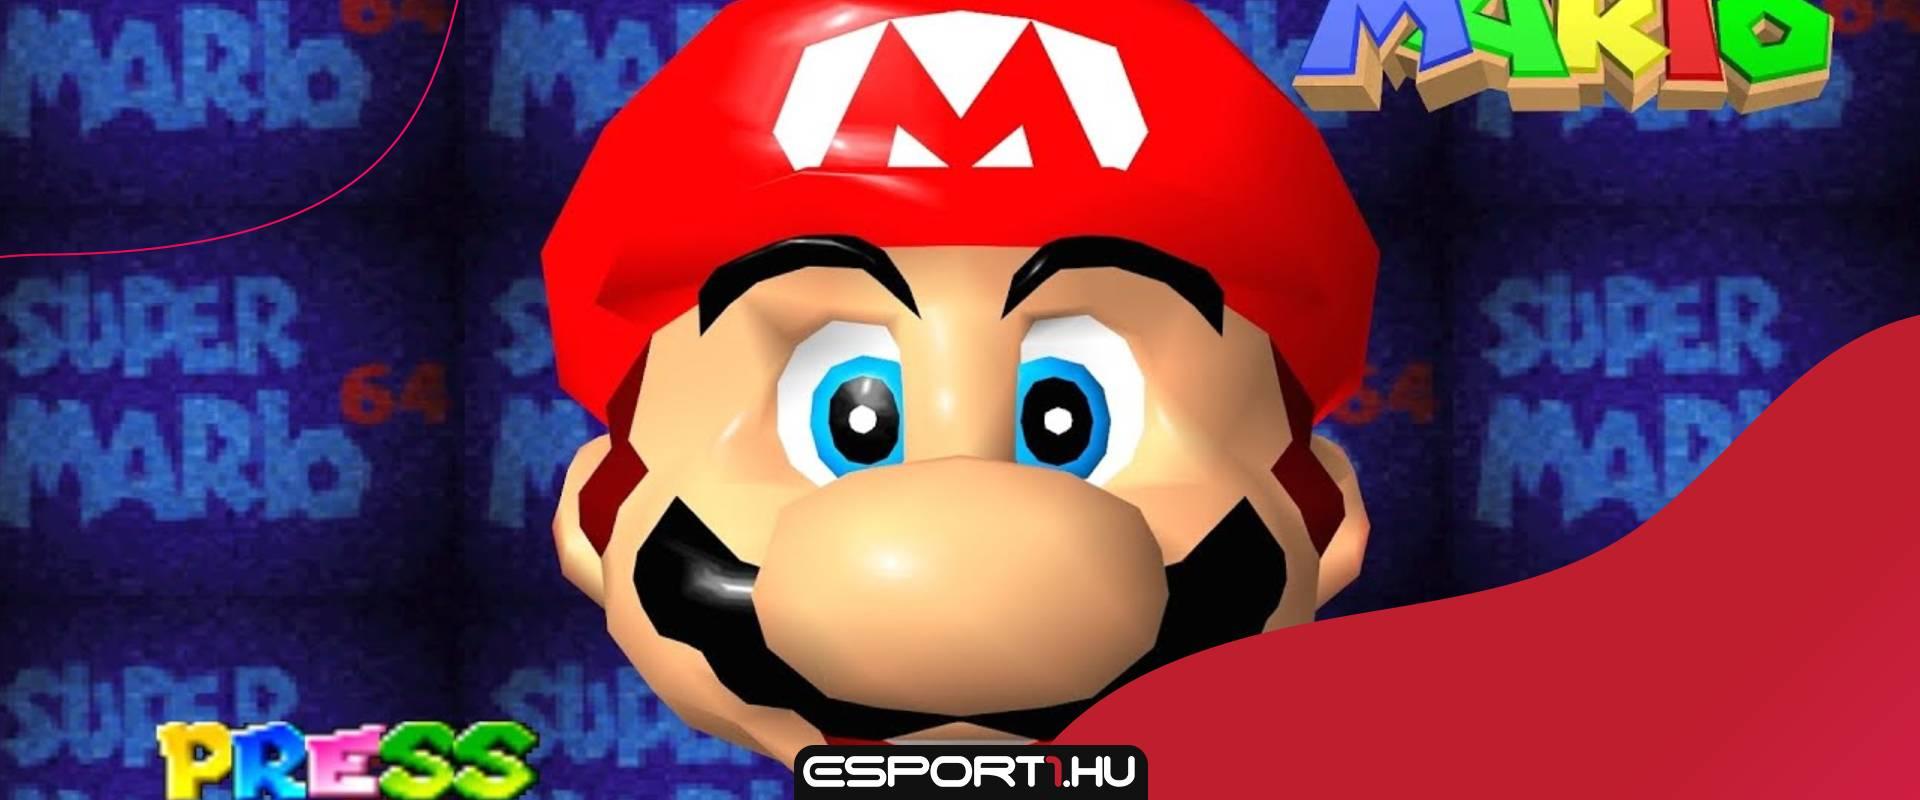 Közel fél milliárd forintért talált új gazdára egy bontatlan Super Mario játék